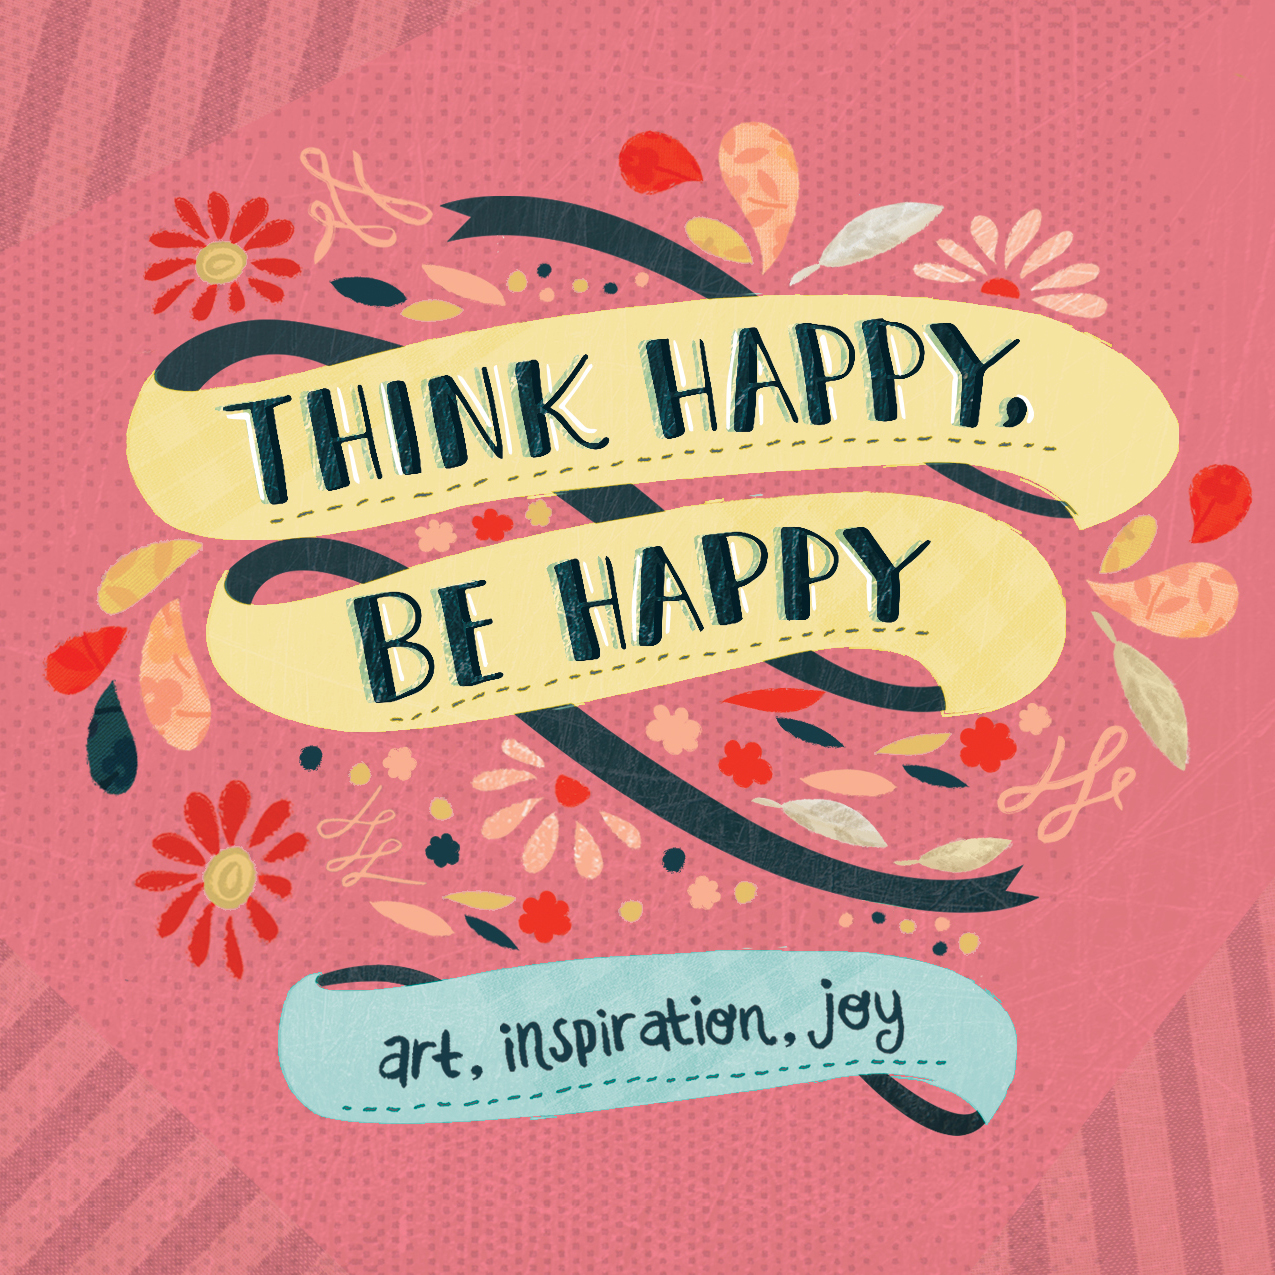 Be happy com. Think Happy, be Happy. Be Happy Art. Think Happy книга. Be Happy картинки.